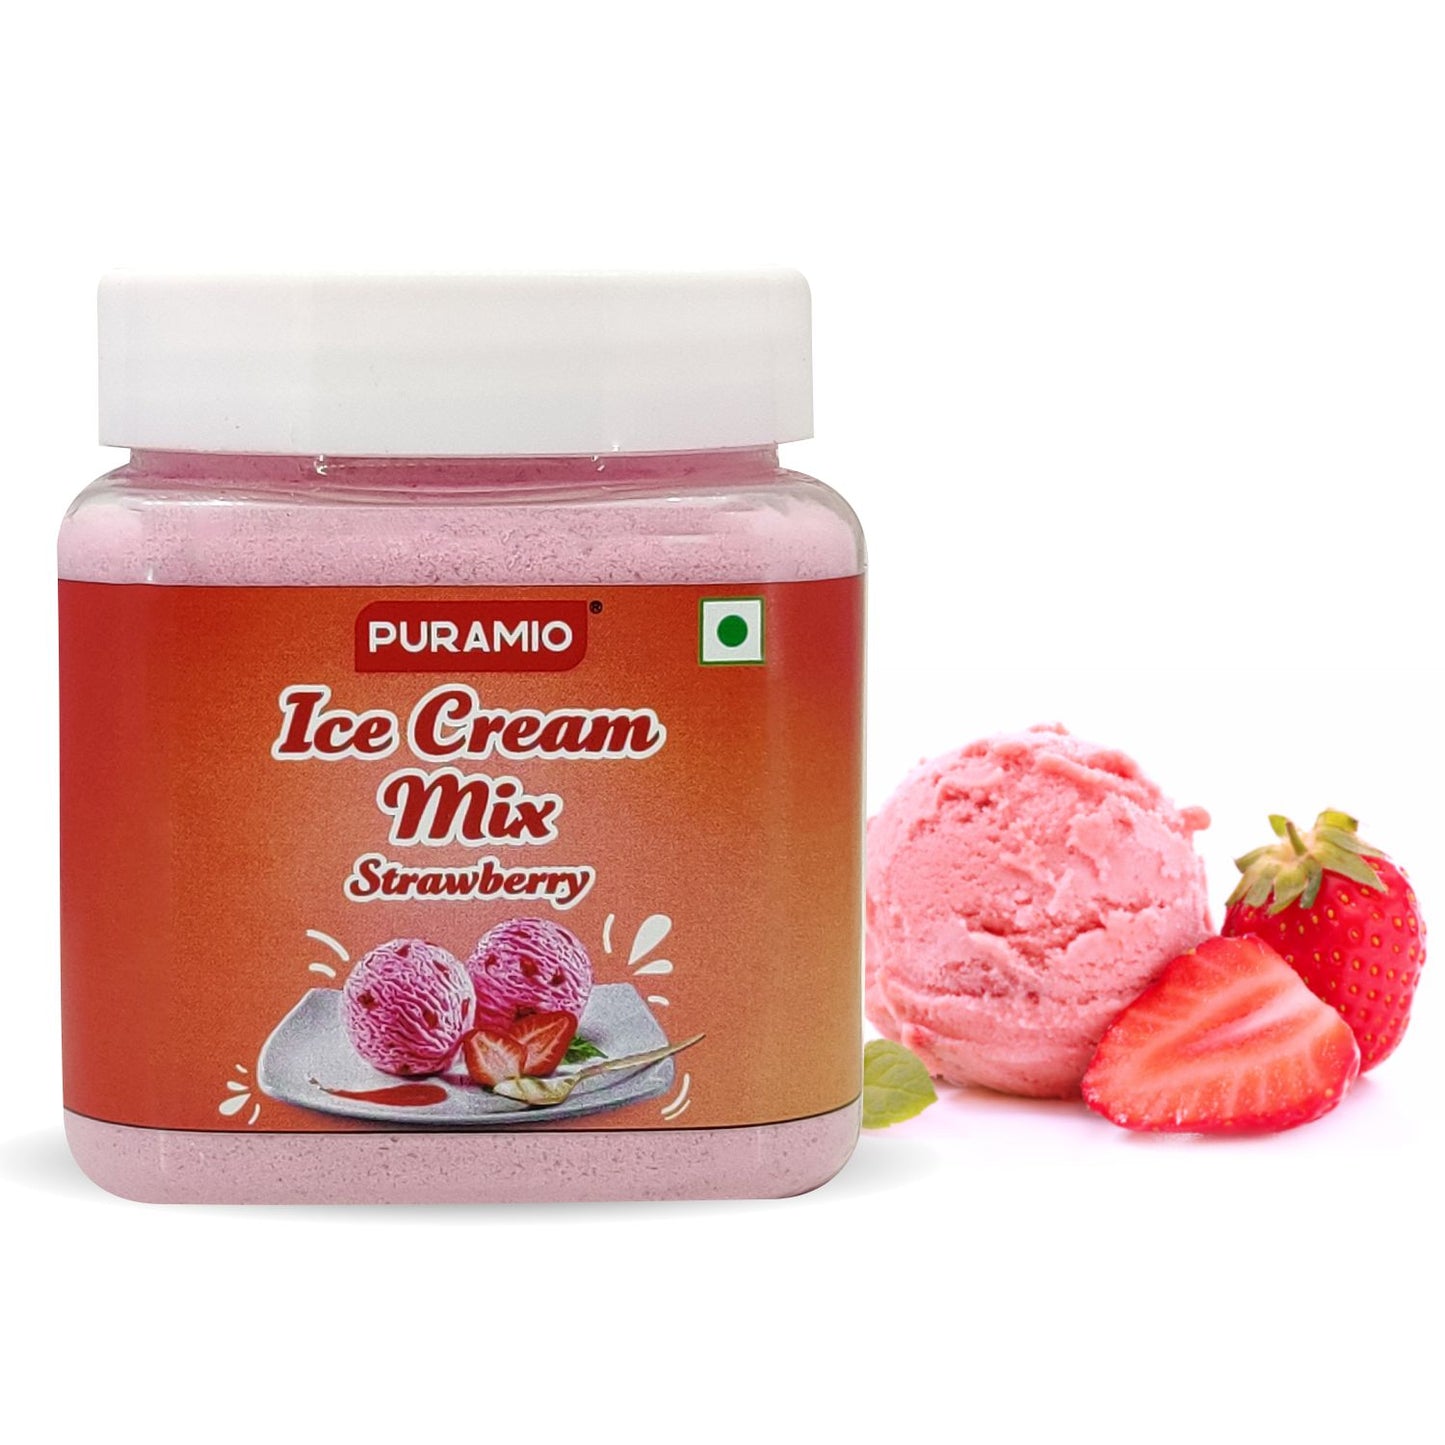 Puramio Ice Cream Mix, 250g (Strawberry)